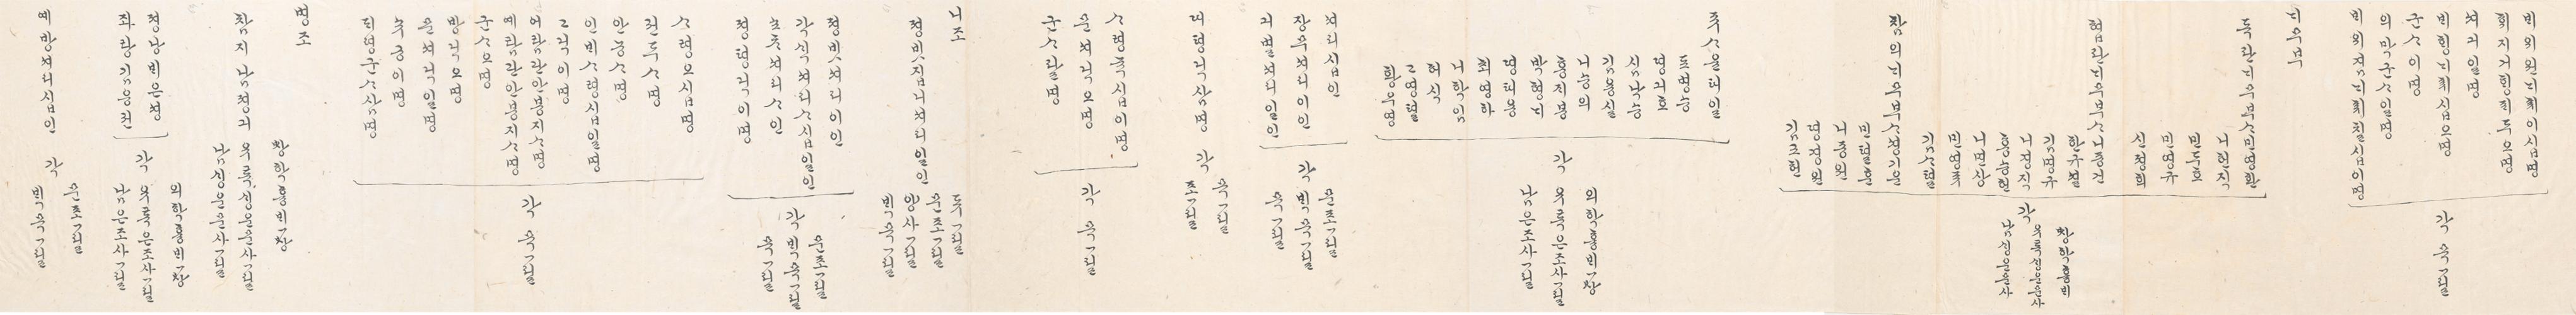 2_1894년 2월 왕세자 탄일 기념 상격 발기 7.jpg